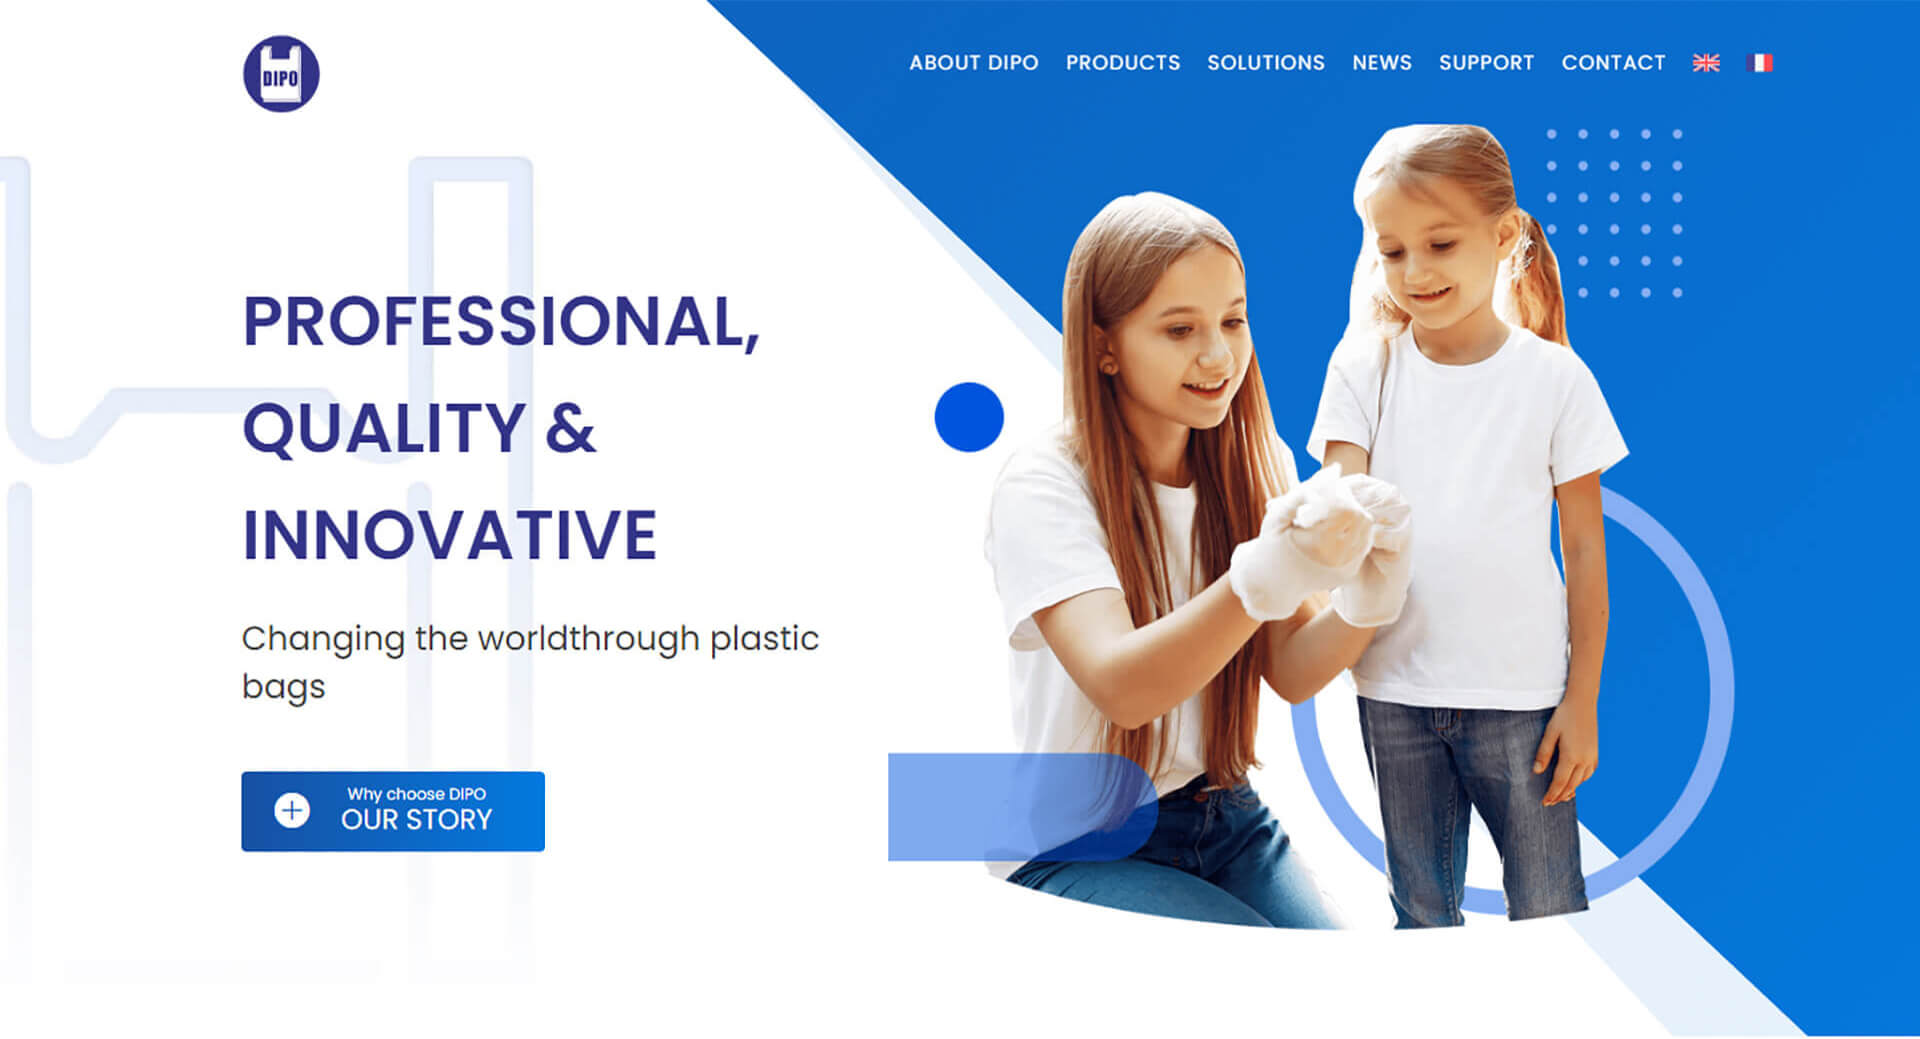 袋寶塑膠機械網站設計客製化RWD網站, 多語系服務, SEO網路行銷, 承租空間